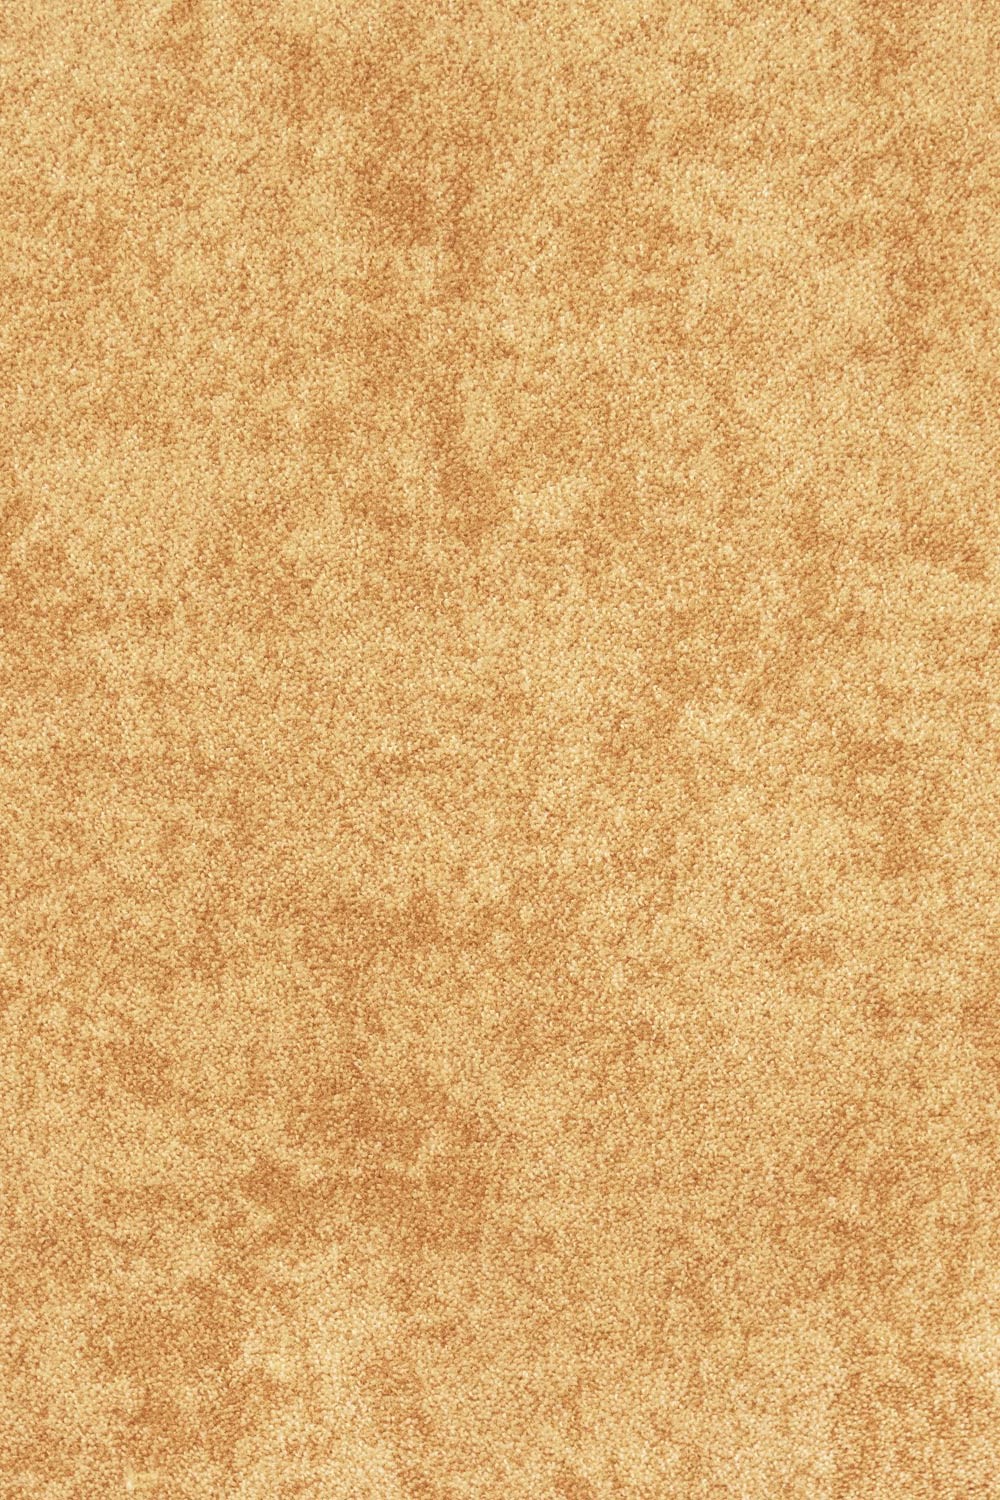 Metrážový koberec SERENADE 900 - Zbytek 72x400 cm